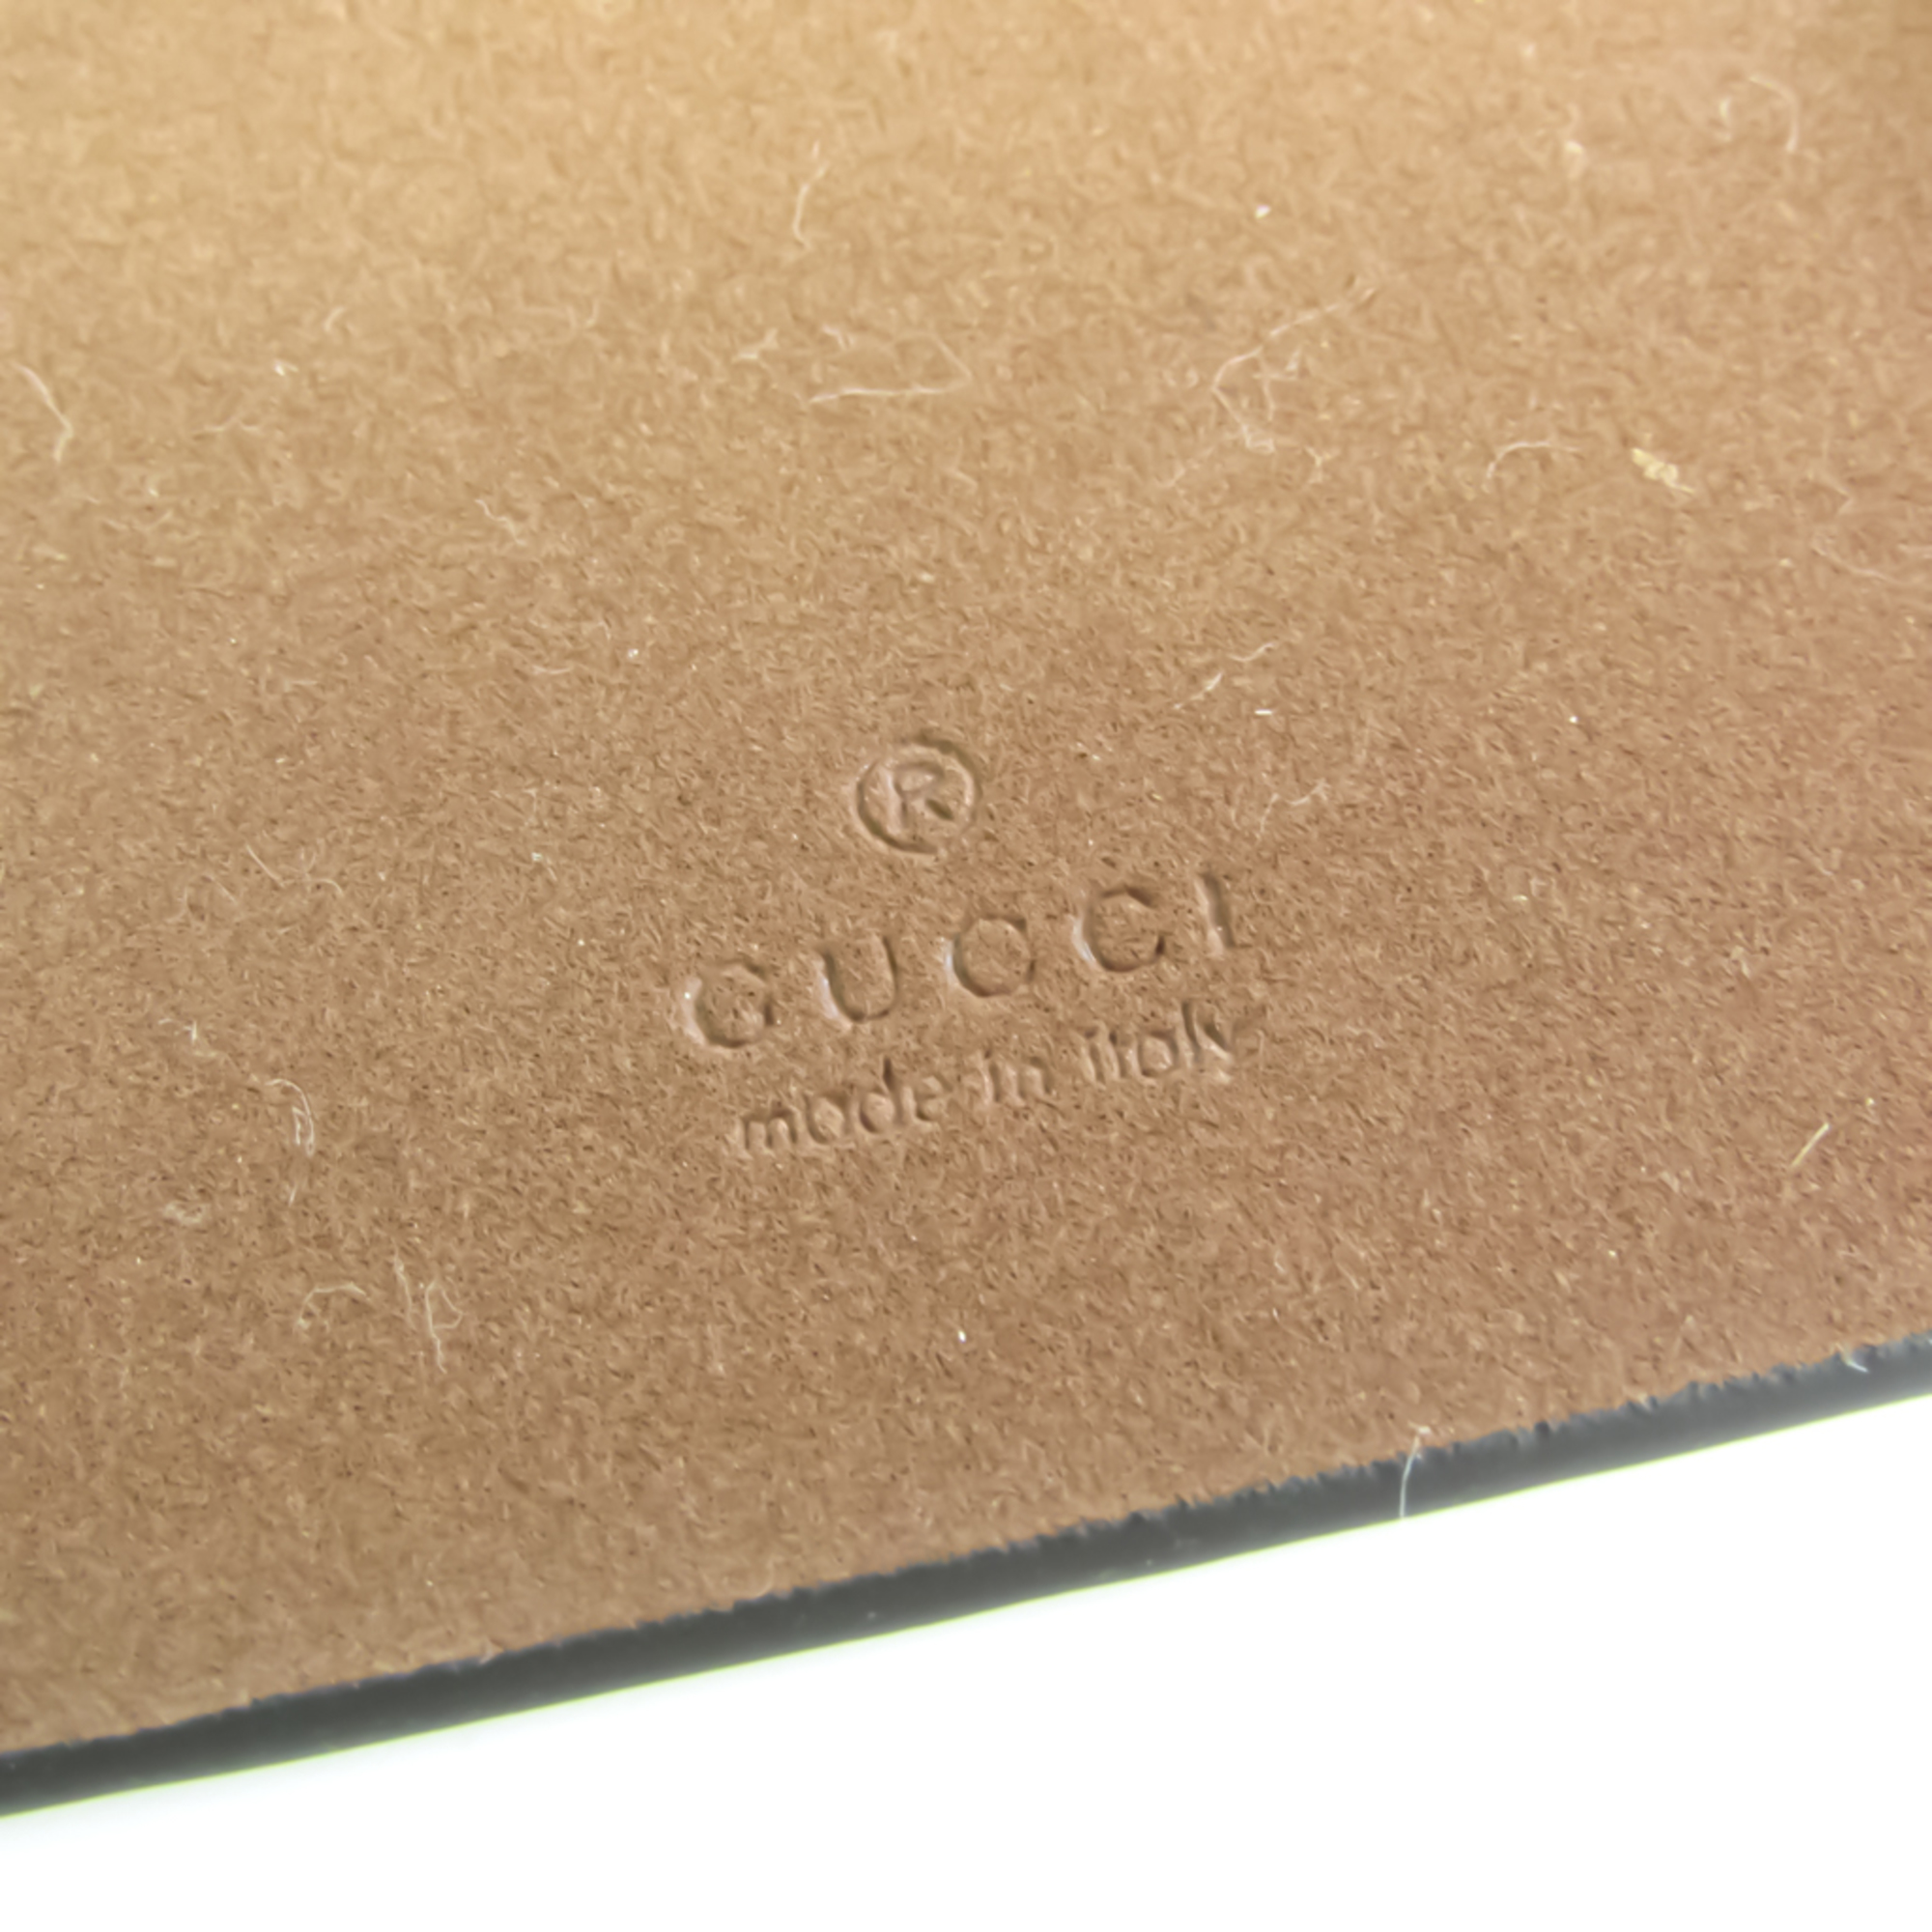 グッチ(Gucci) GGスプリーム コーティングキャンバス バンパー iPhone 6 Plus 対応 ベージュ